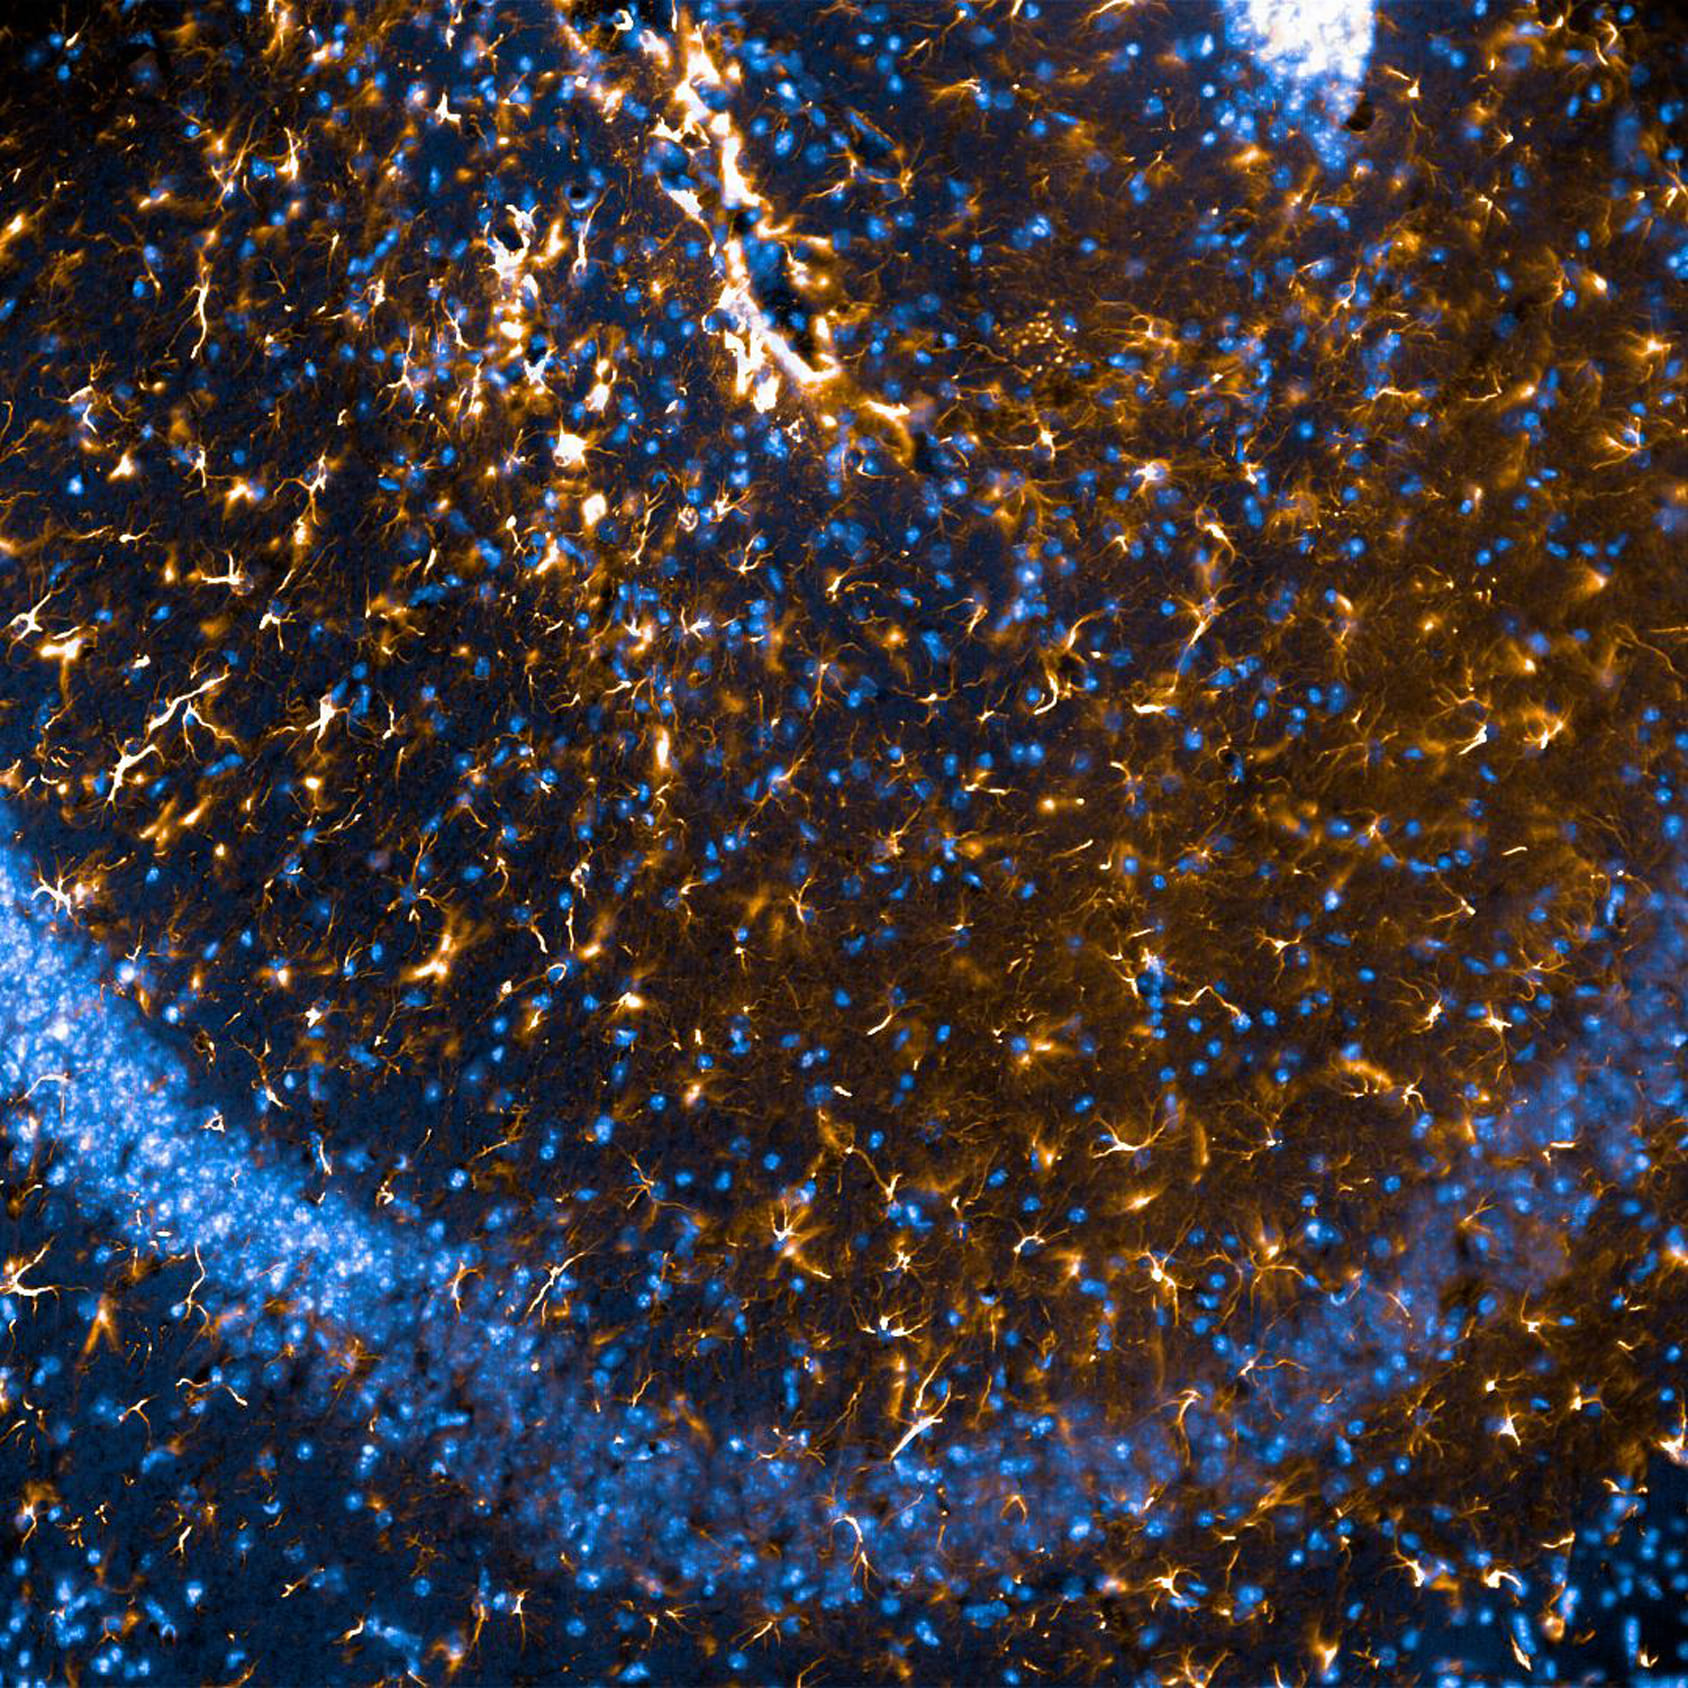 La imagen de esta microfotografía corresponde a un cerebro de ratón. En azul se observan los núcleos de las neuronas, dispuestos en compleja y ordenada distribución. Mientras tanto, en rojo podemos ver cómo a esa vía azul que describen los núcleos neuronales le sigue un manto de células estrelladas. Precisamente, la forma estelar de este tipo celular es el motivo original de su nombre: astrocitos. 